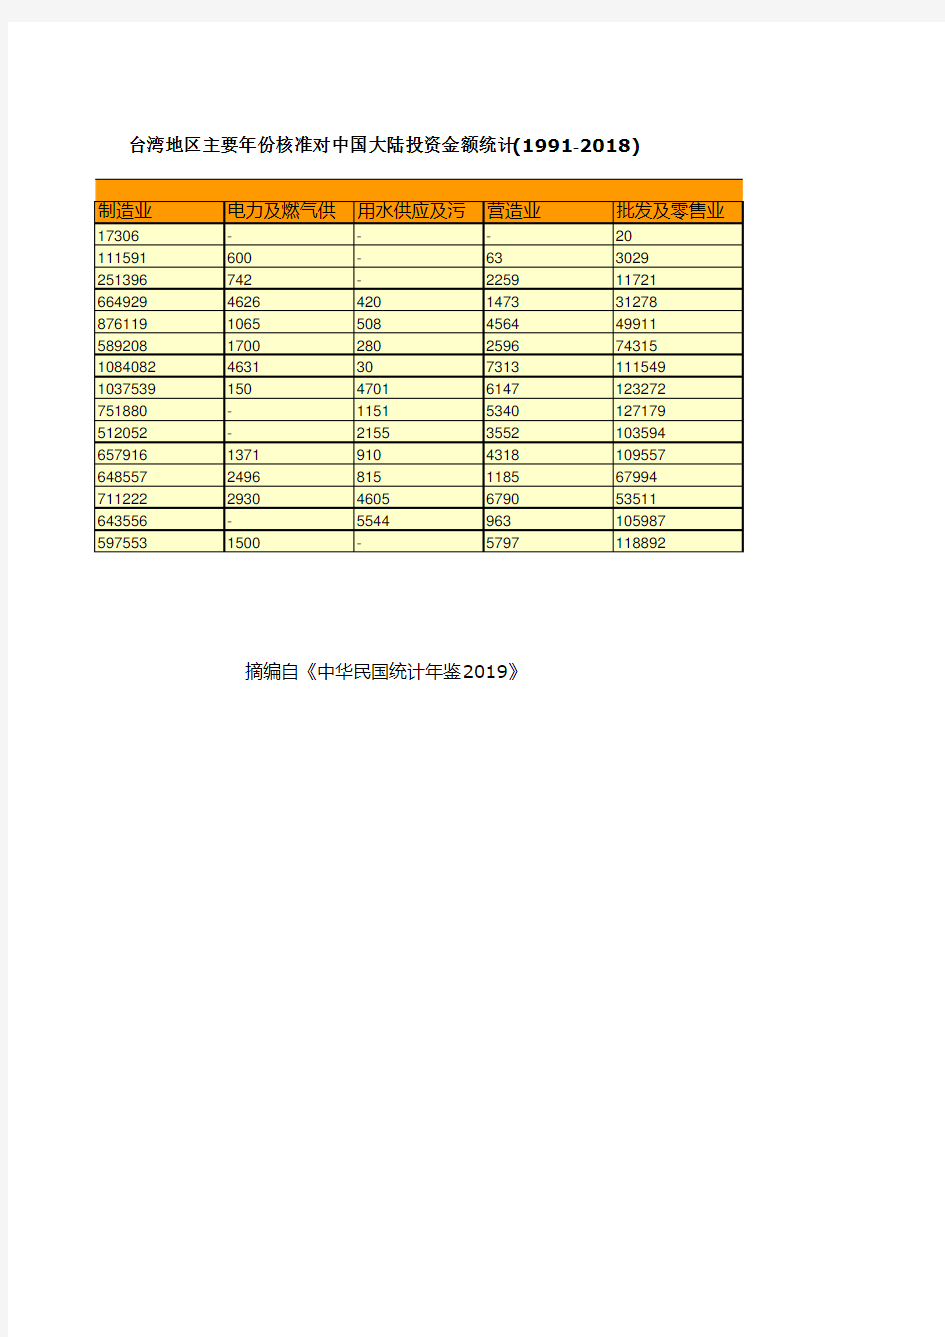 台湾地区主要年份核准对中国大陆投资金额统计(1991-2018)